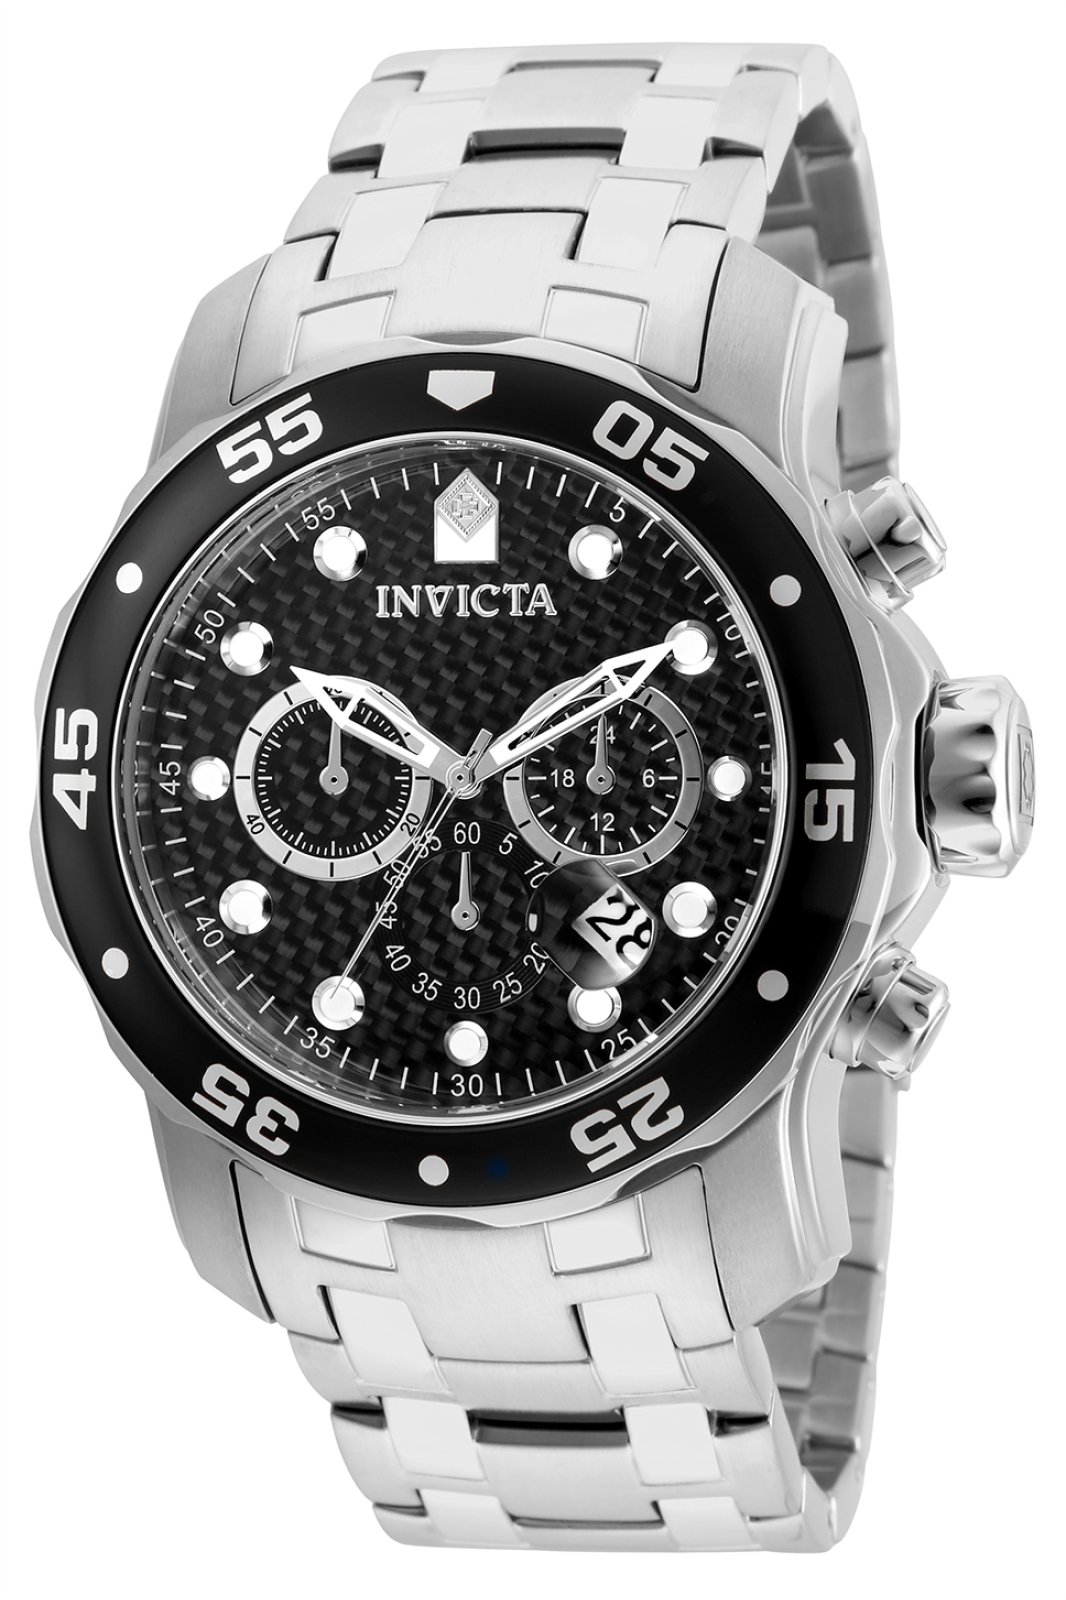 Invicta Watch Pro Diver - SCUBA 17082 - Official Invicta Store